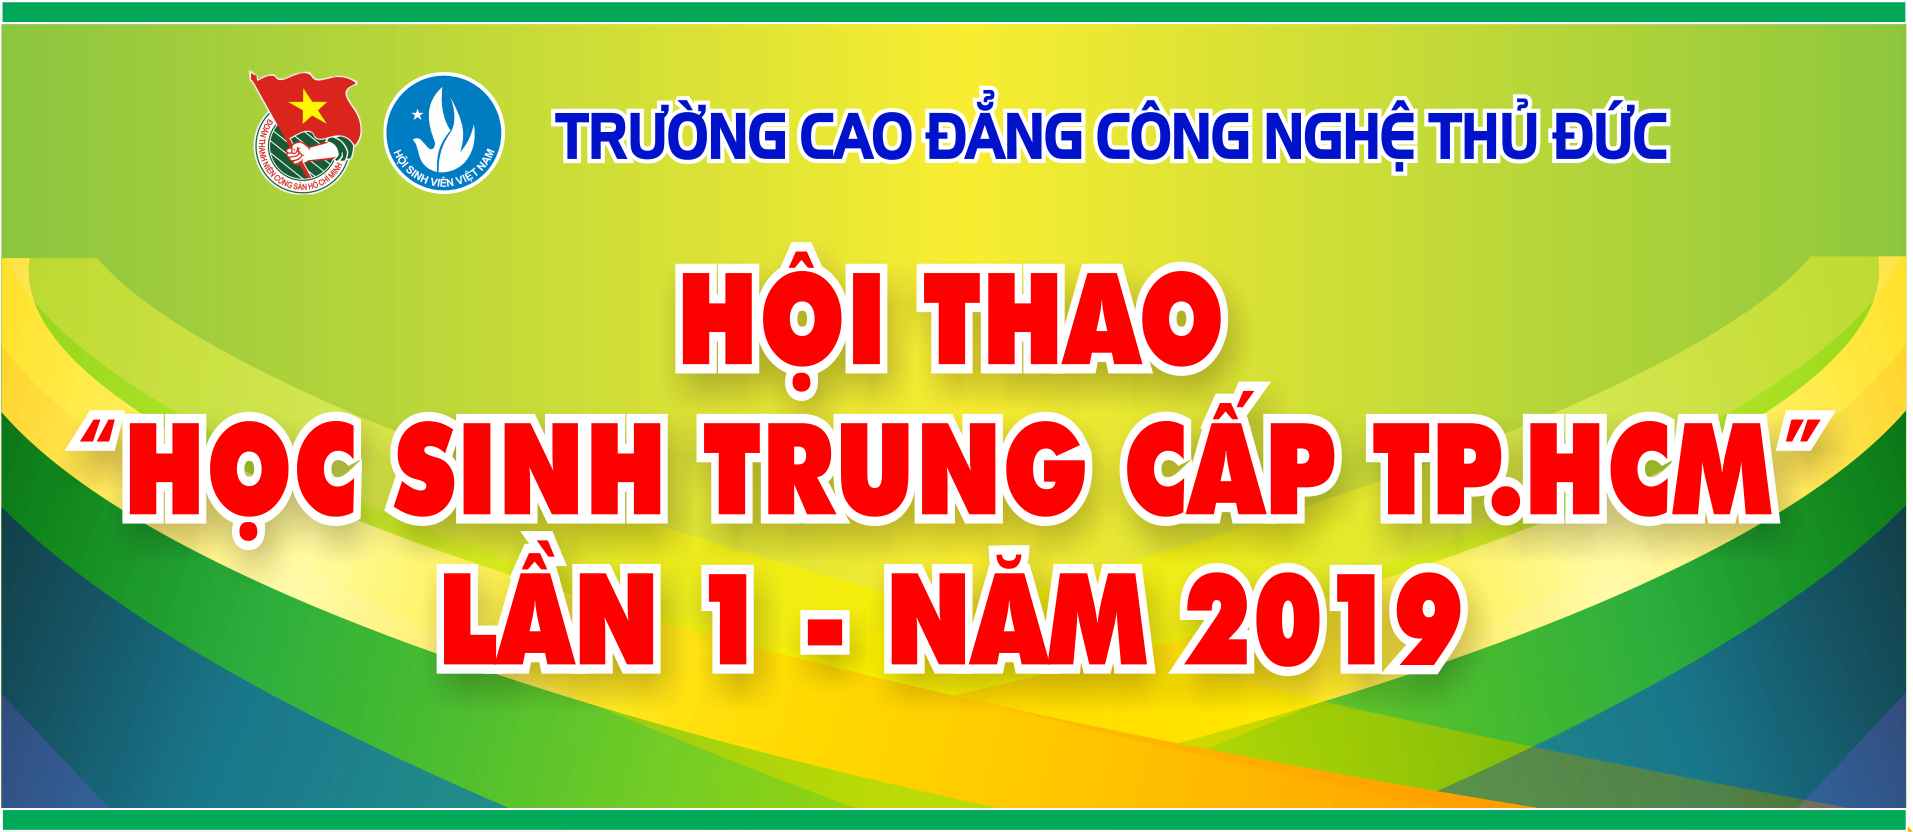 HOI THAO HS TRUNG CAP TP.HCM 2019